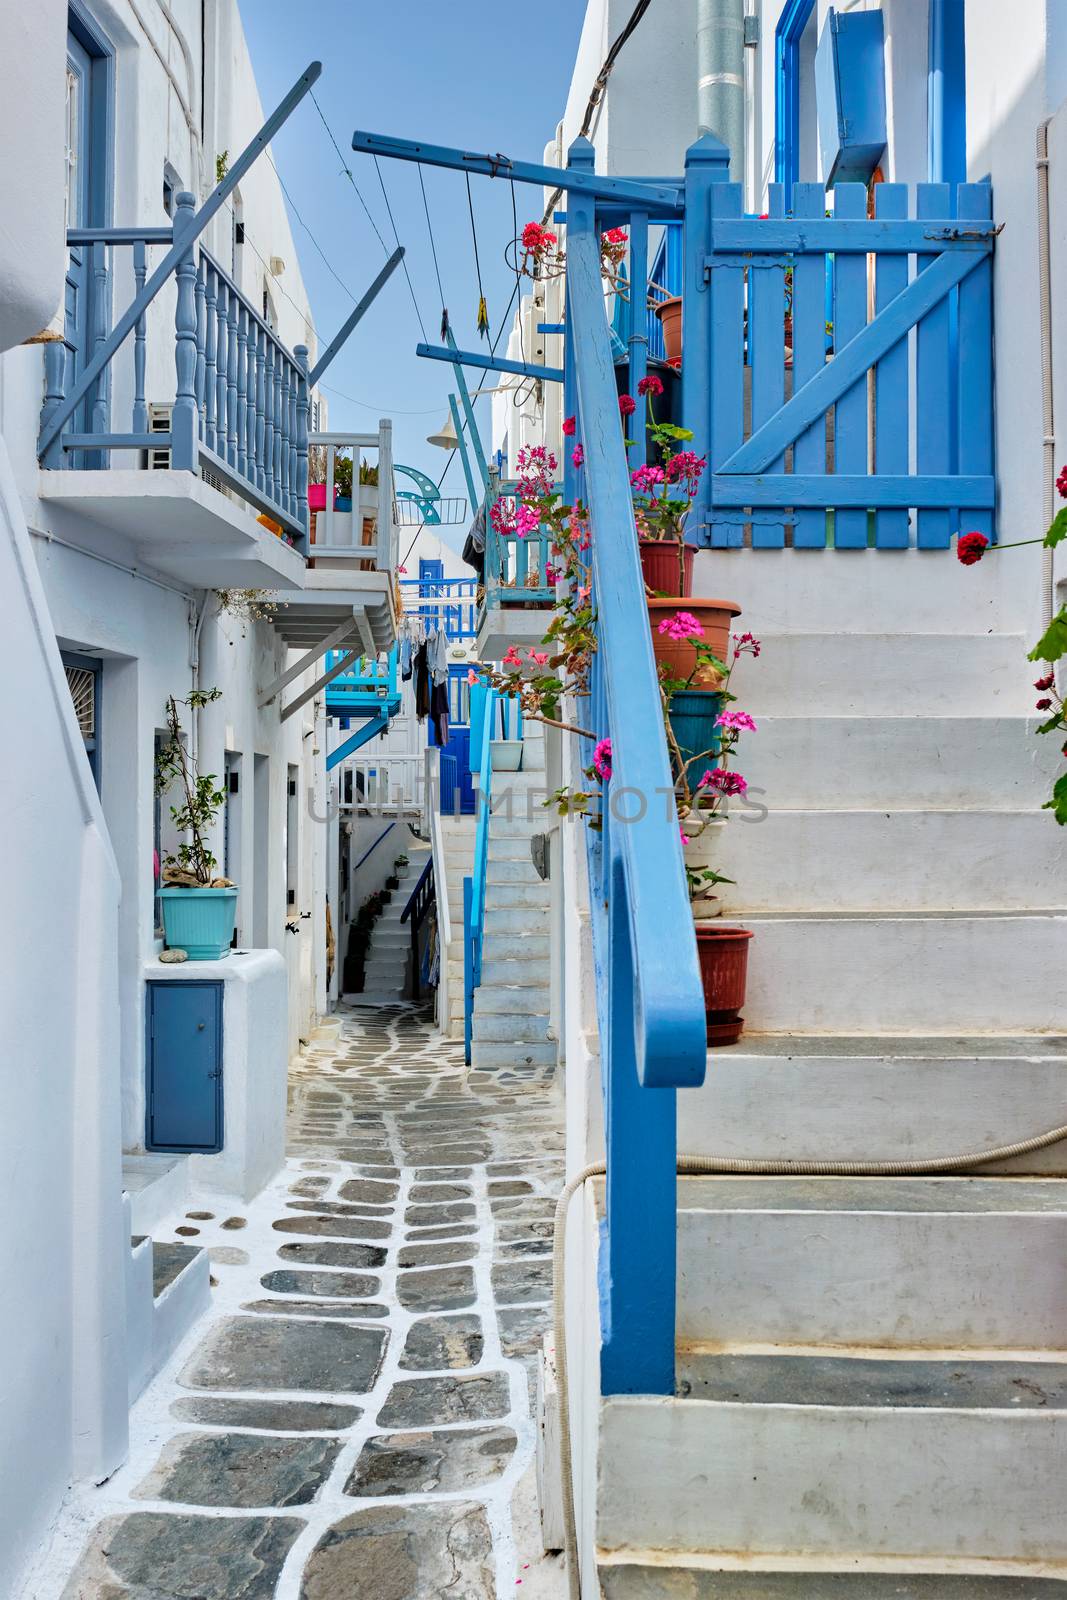 Greek Mykonos street on Mykonos island, Greece by dimol